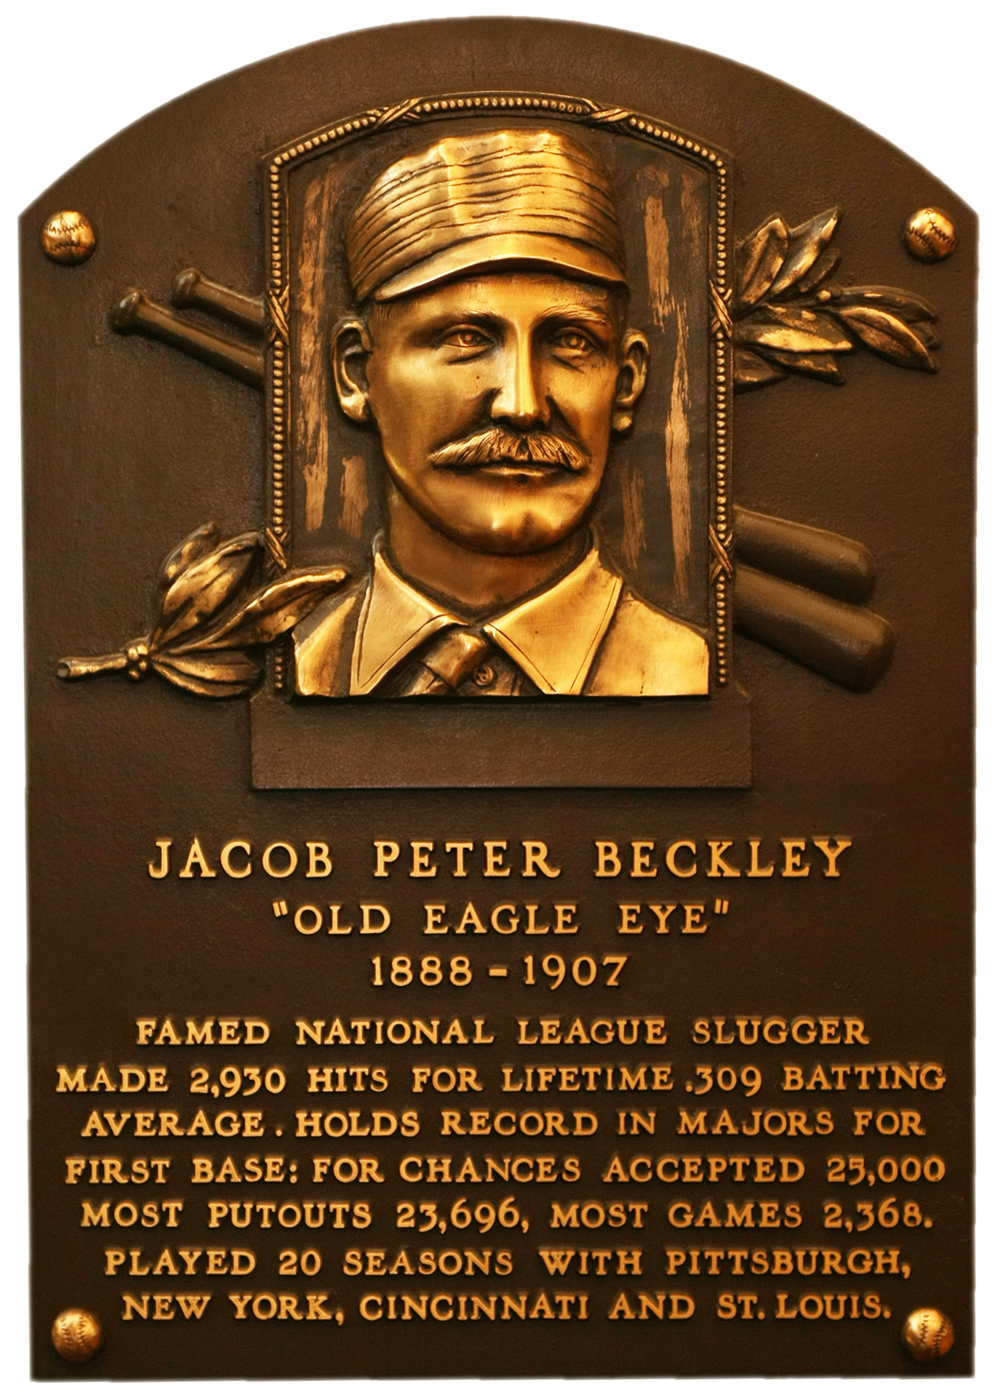 Jake Beckley Hall of Fame plaque